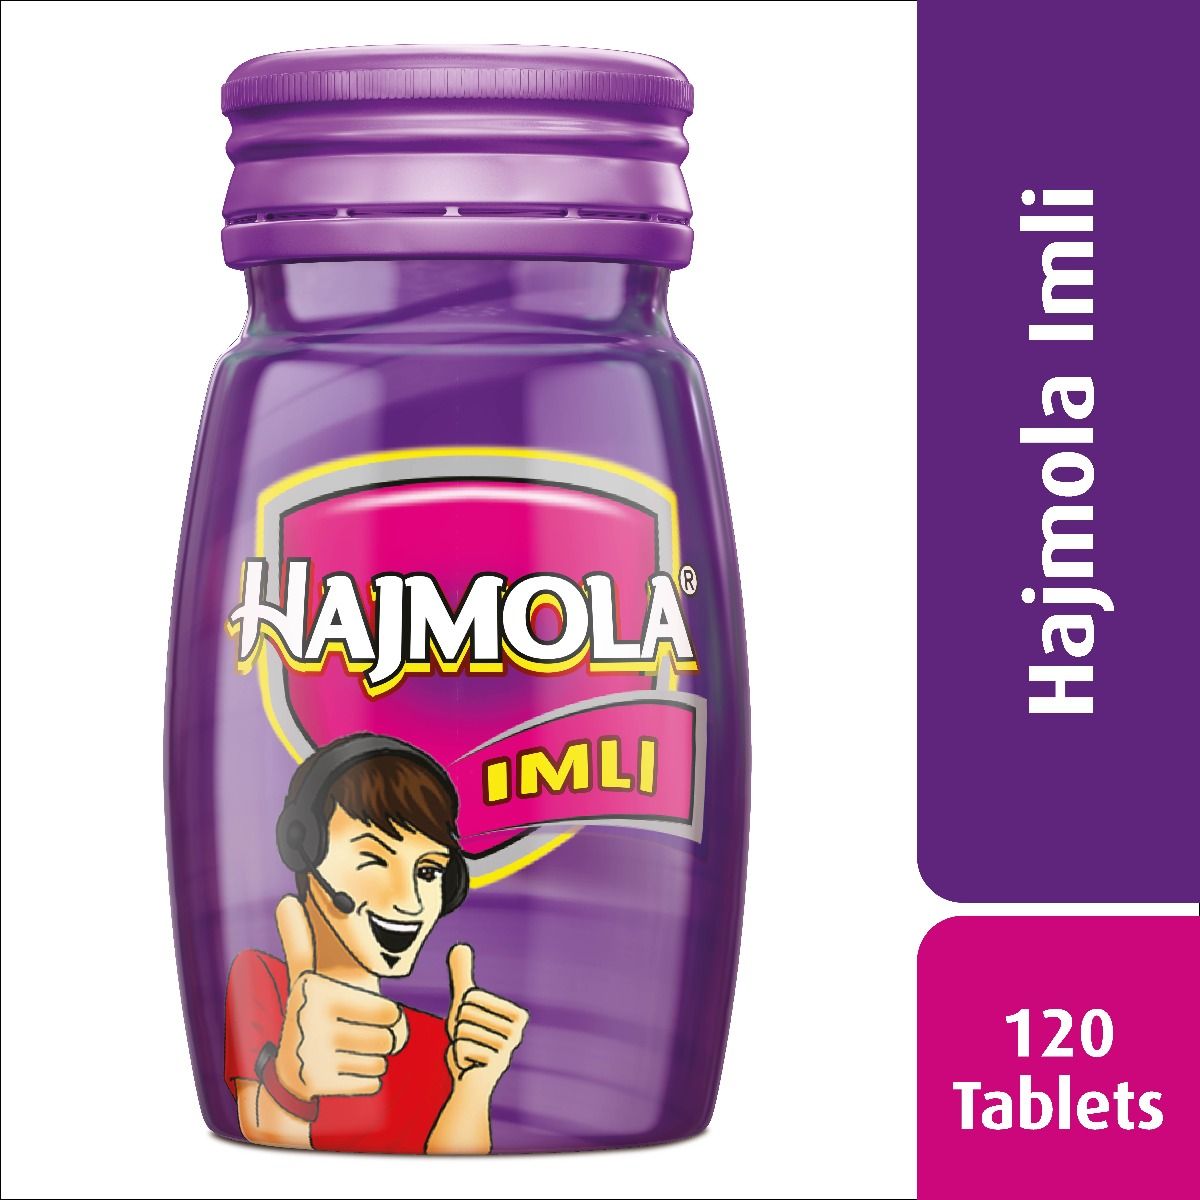 Buy Dabur Hajmola Imli, 120 Tablets Online